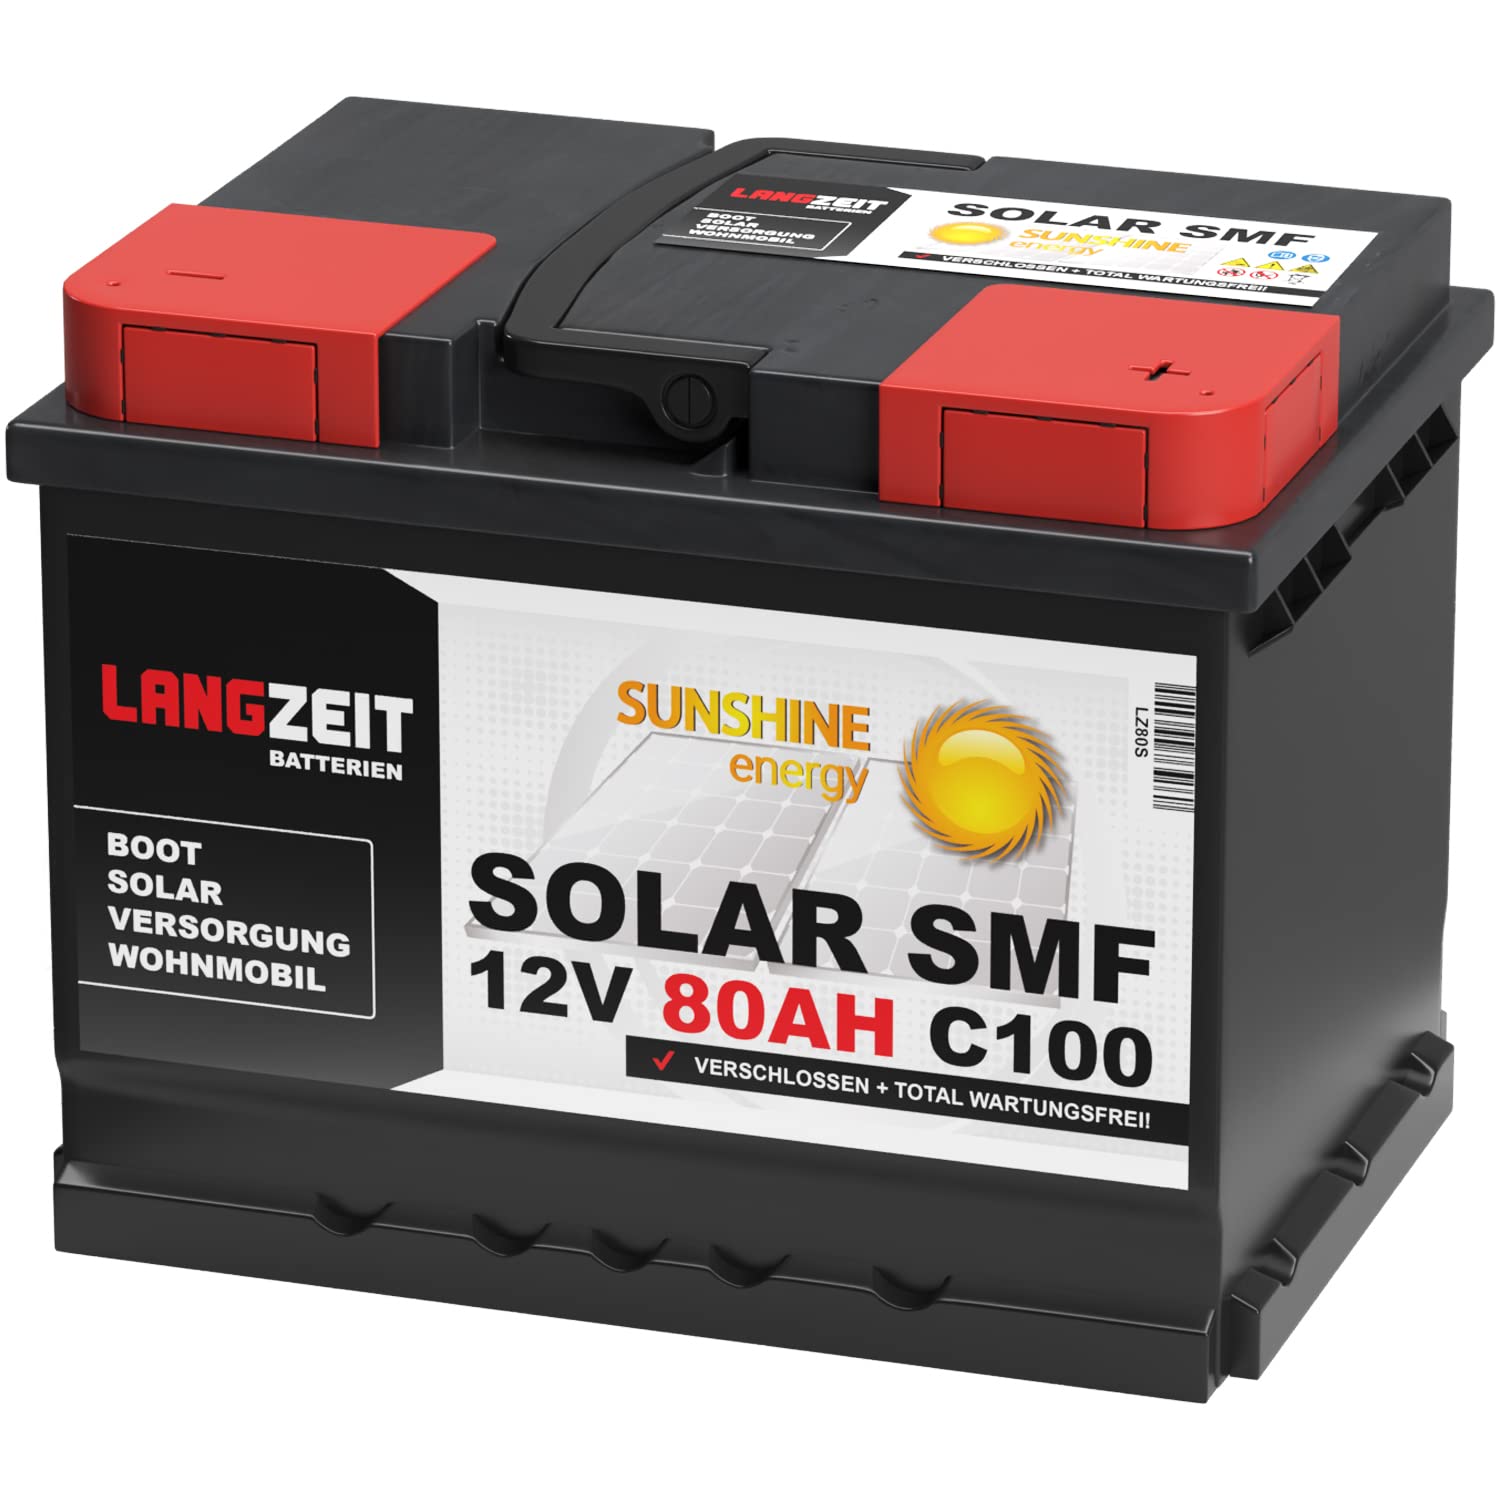 Langzeit Solar SMF Solarbatterie 80Ah 12V Versorgungsbatterie Wohnmobil Batterie Boot total wartungsfrei 70Ah 75Ah von LANGZEIT Batterien